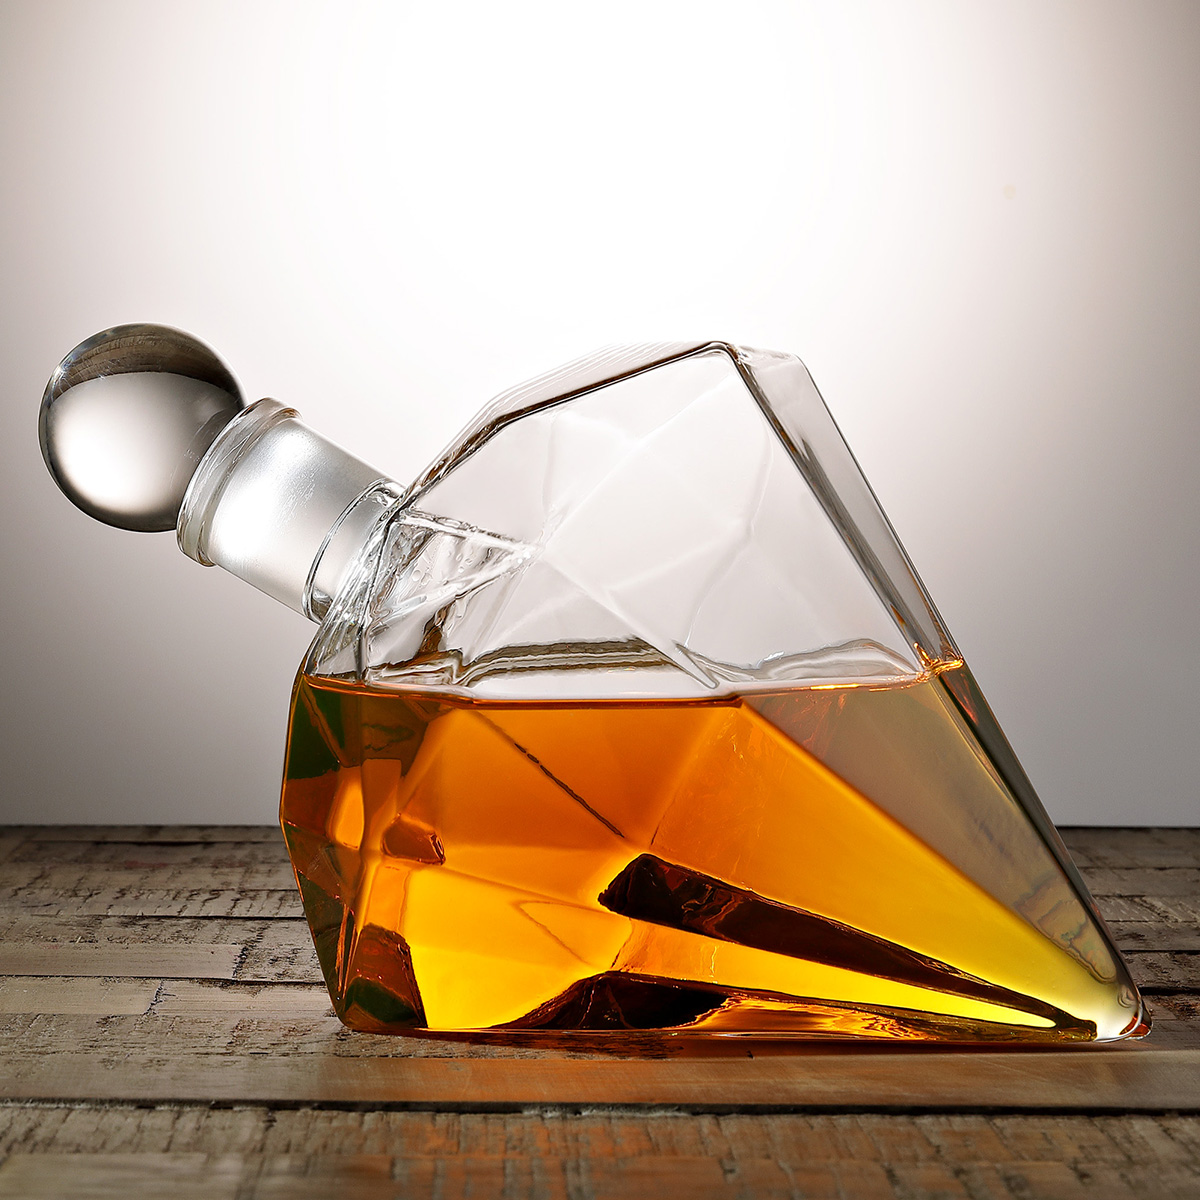 Dekanter Geschenk-Set Dekanter Geschenk für Sie Whisky Dekanter Glas-Dekanter Beautify Schillernde Dekanter-Set